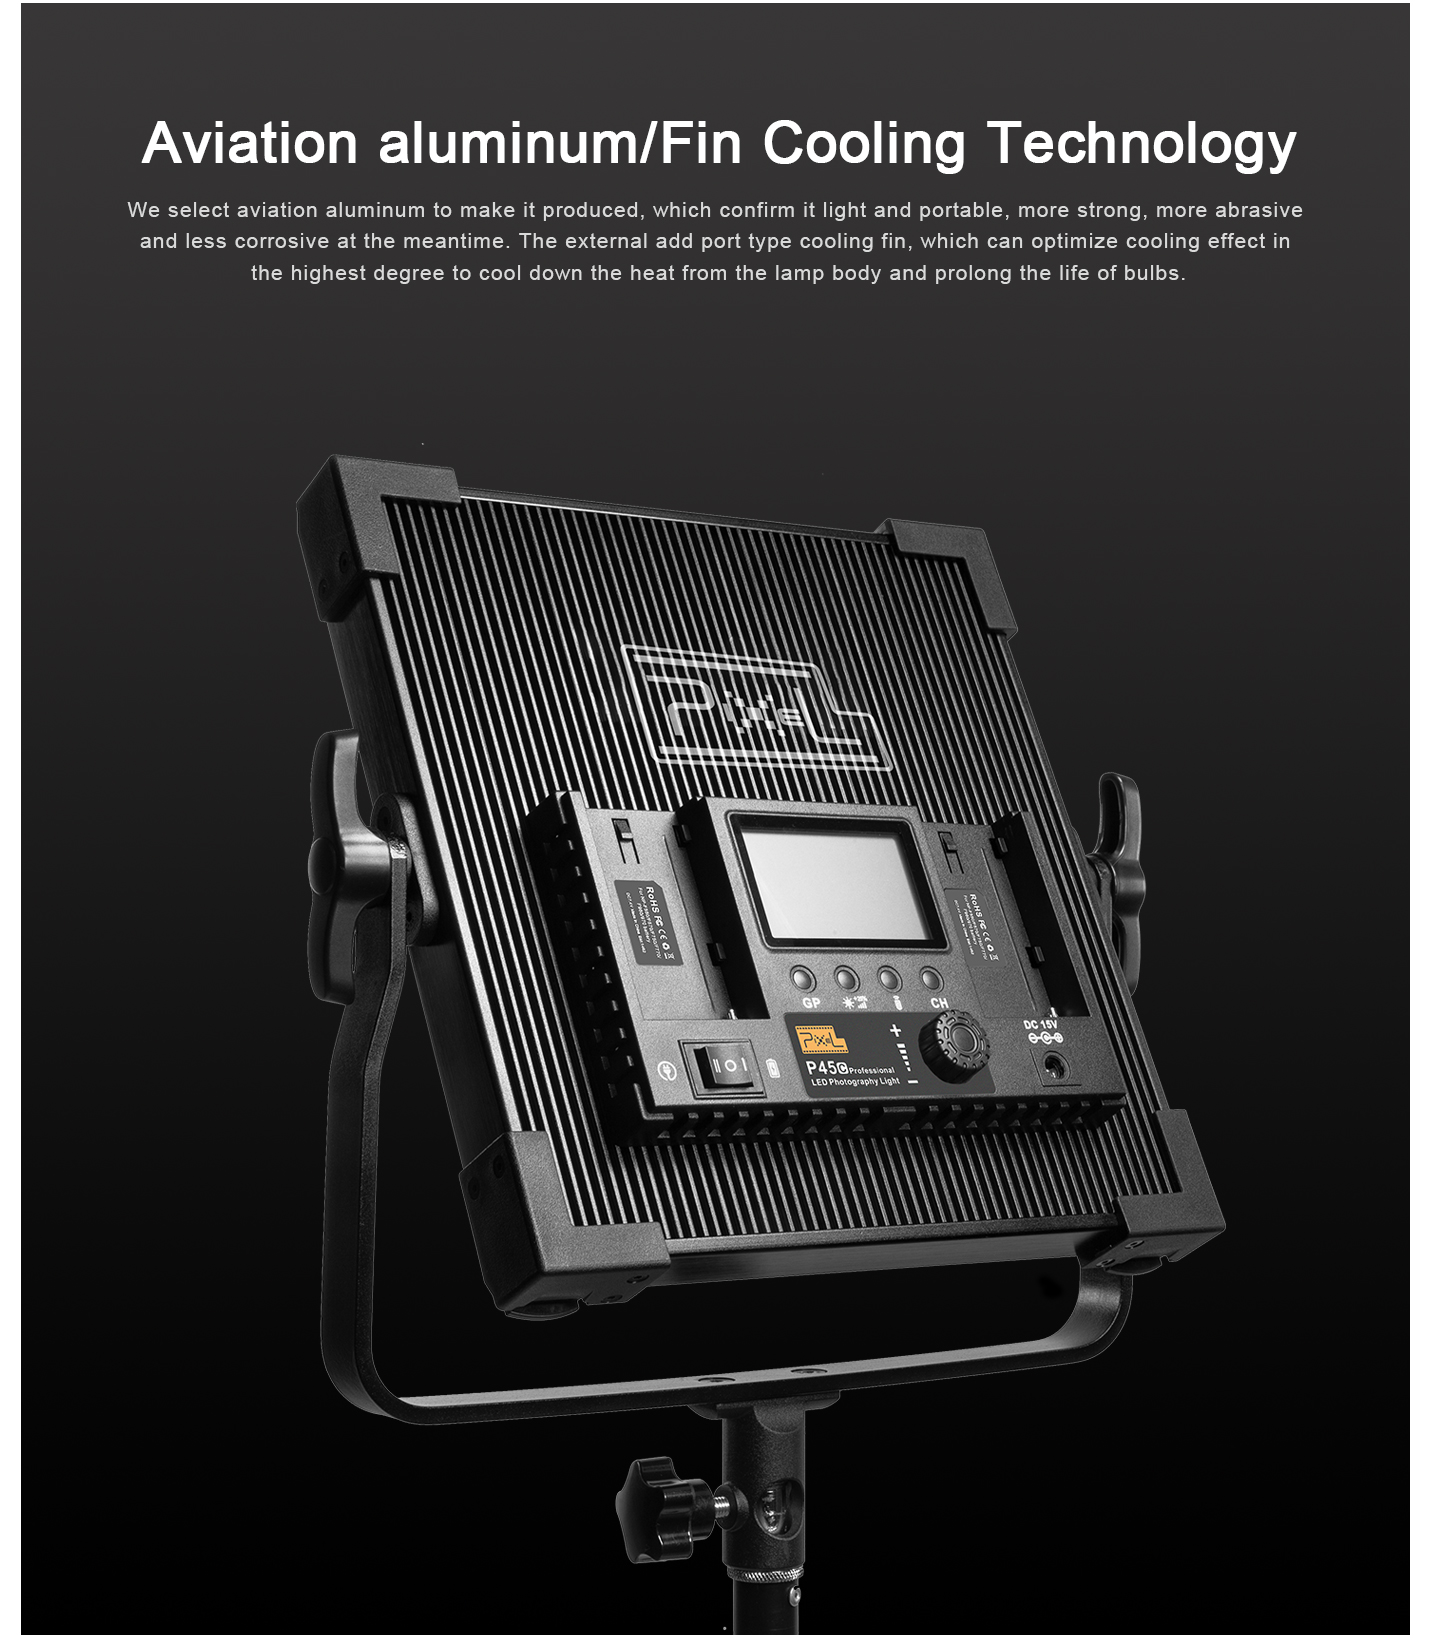 Aviation aluminum/Fin Cooling Technology